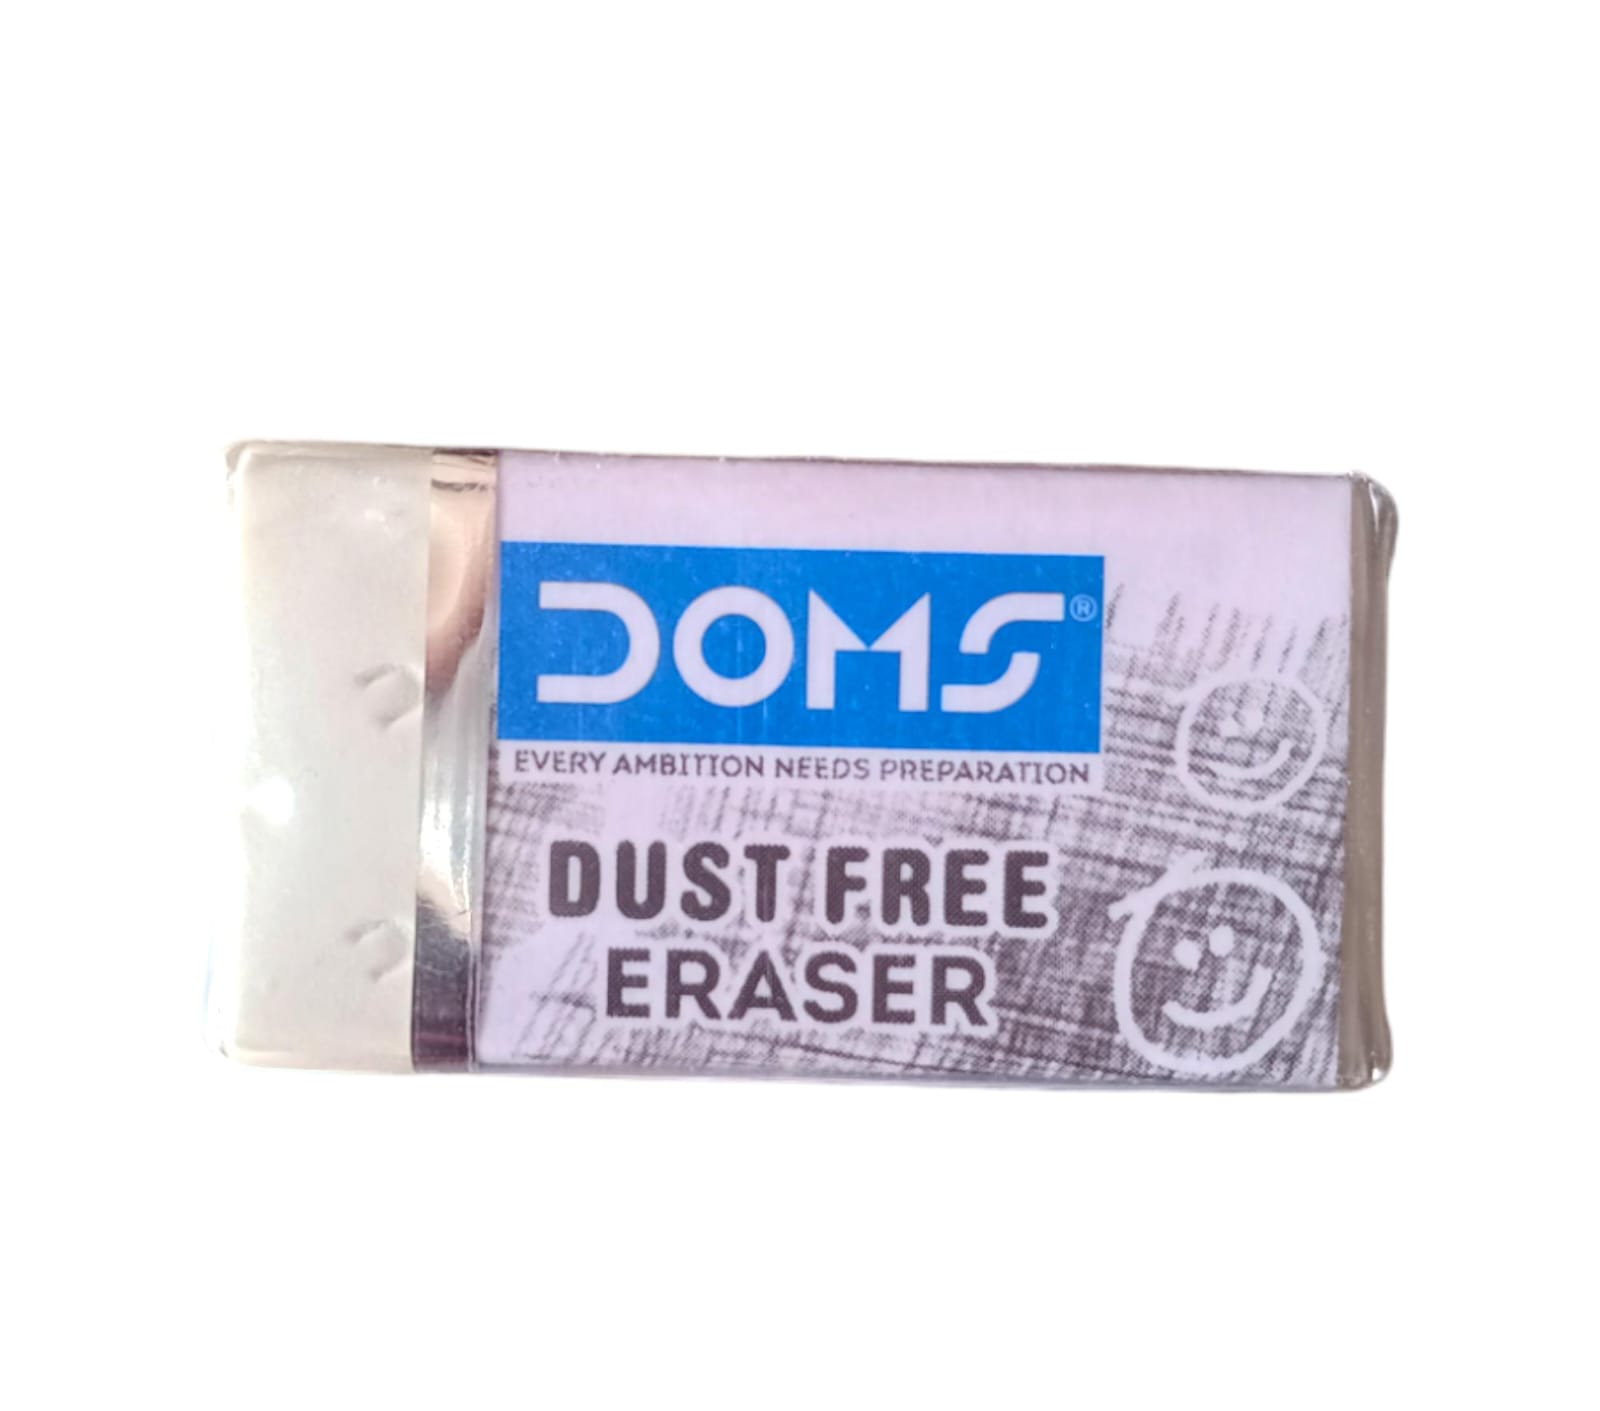 Doms Eraser